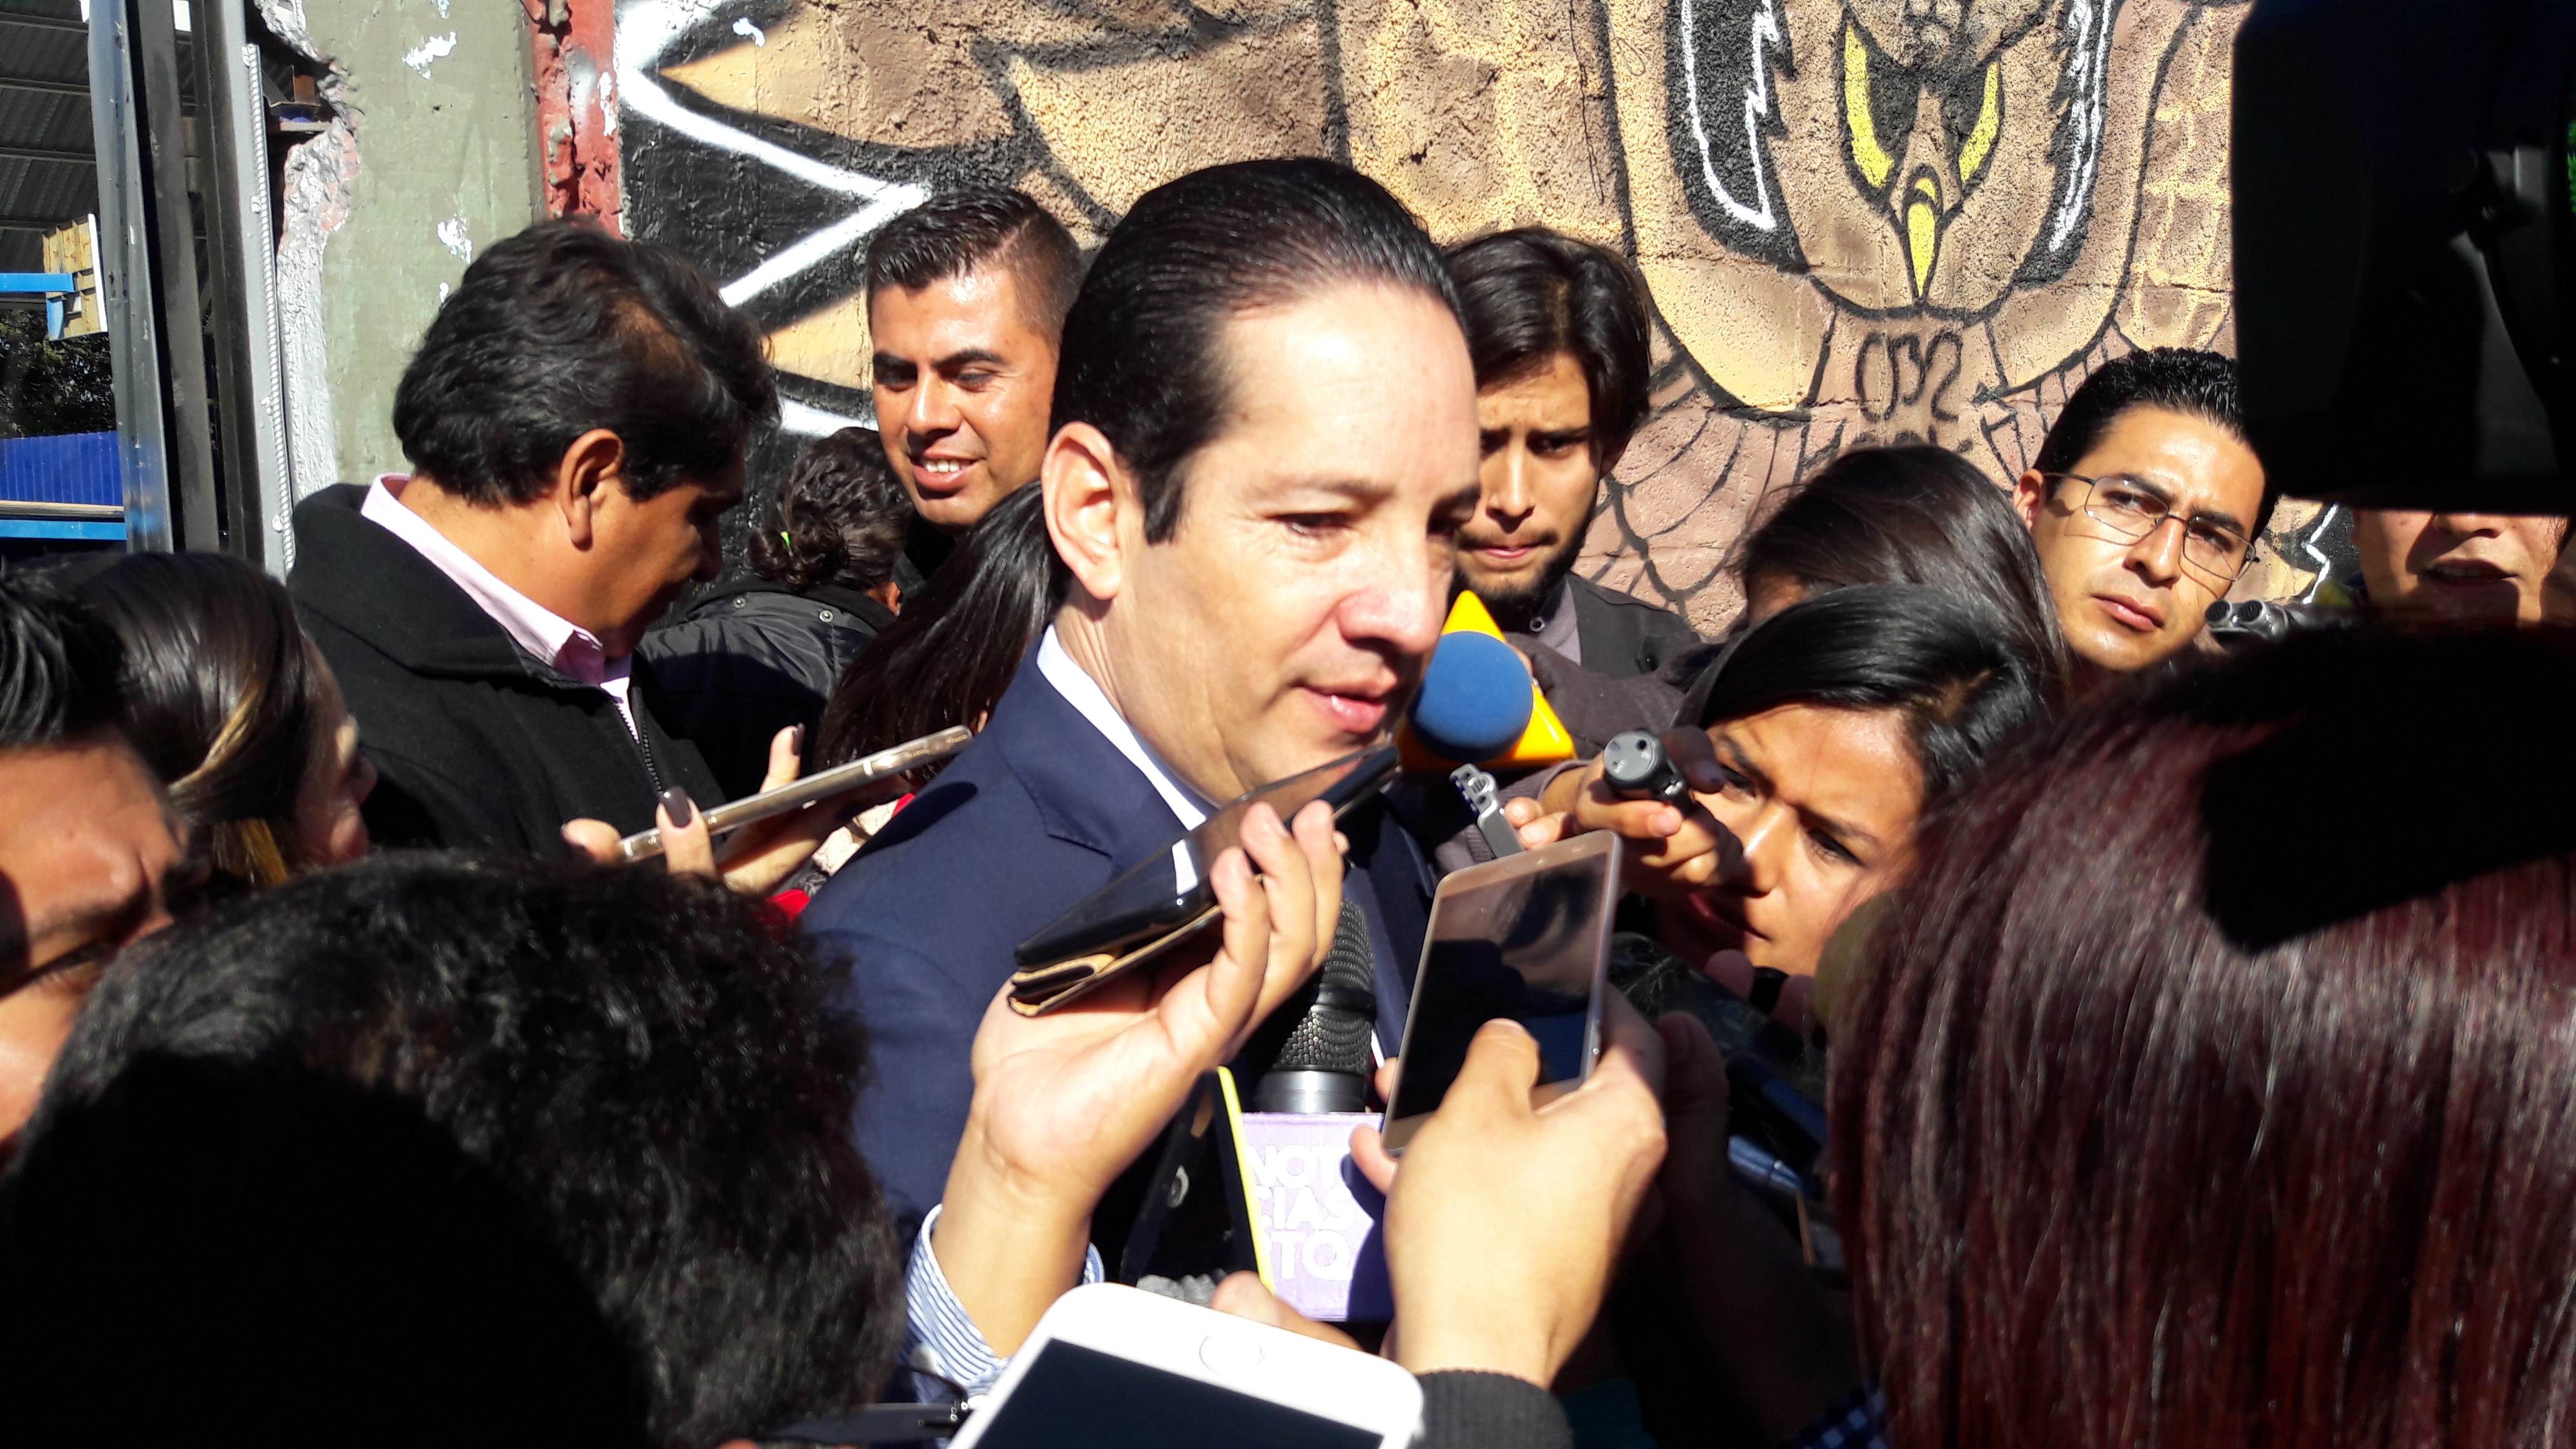  “Operación mochila” no se puede imponer por determinación del gobierno: Pancho Domínguez